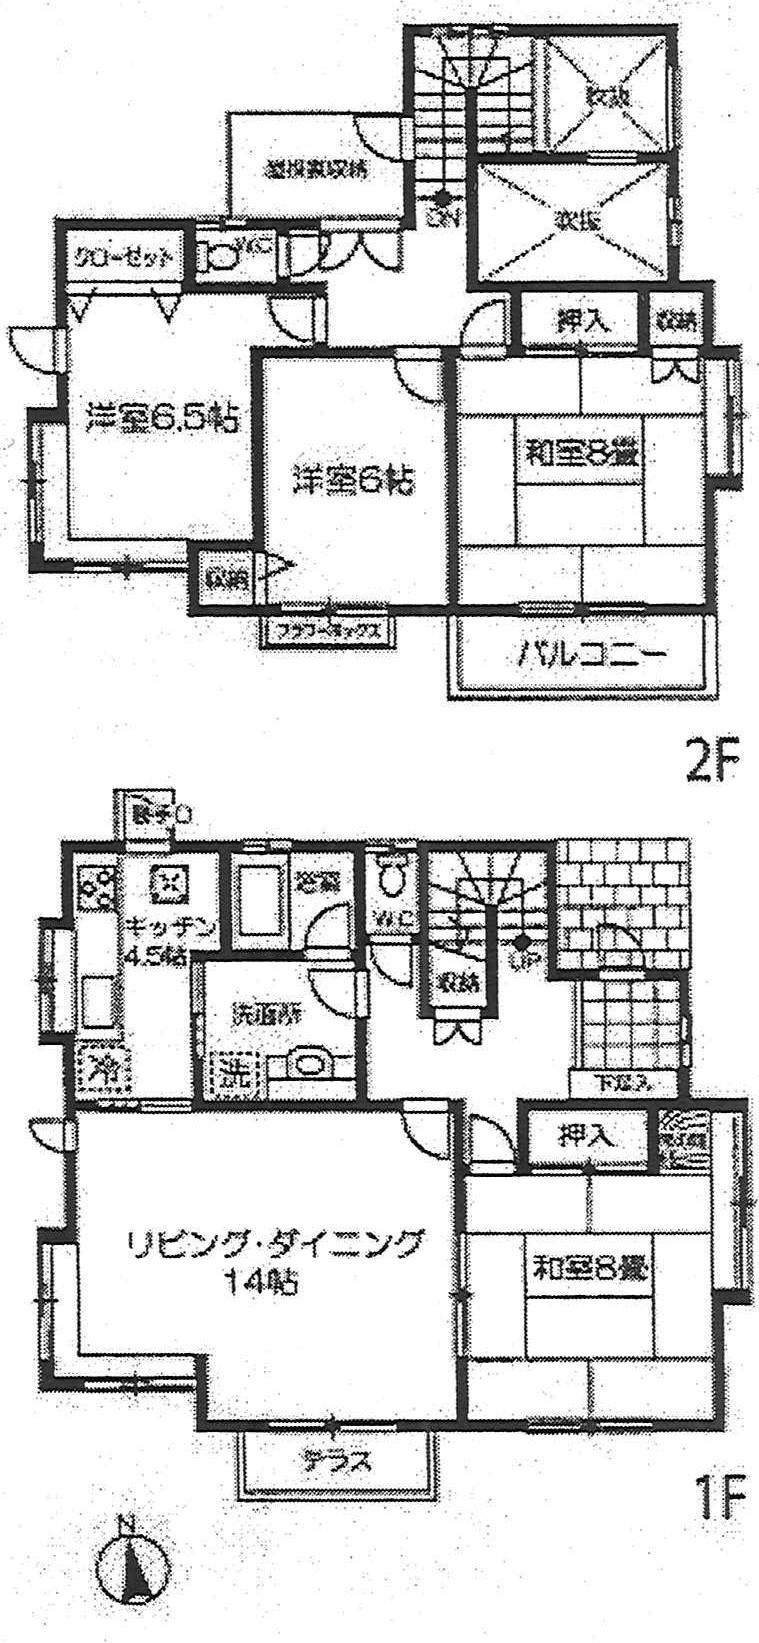 Floor plan. 13.6 million yen, 4LDK, Land area 203.13 sq m , Building area 116.75 sq m